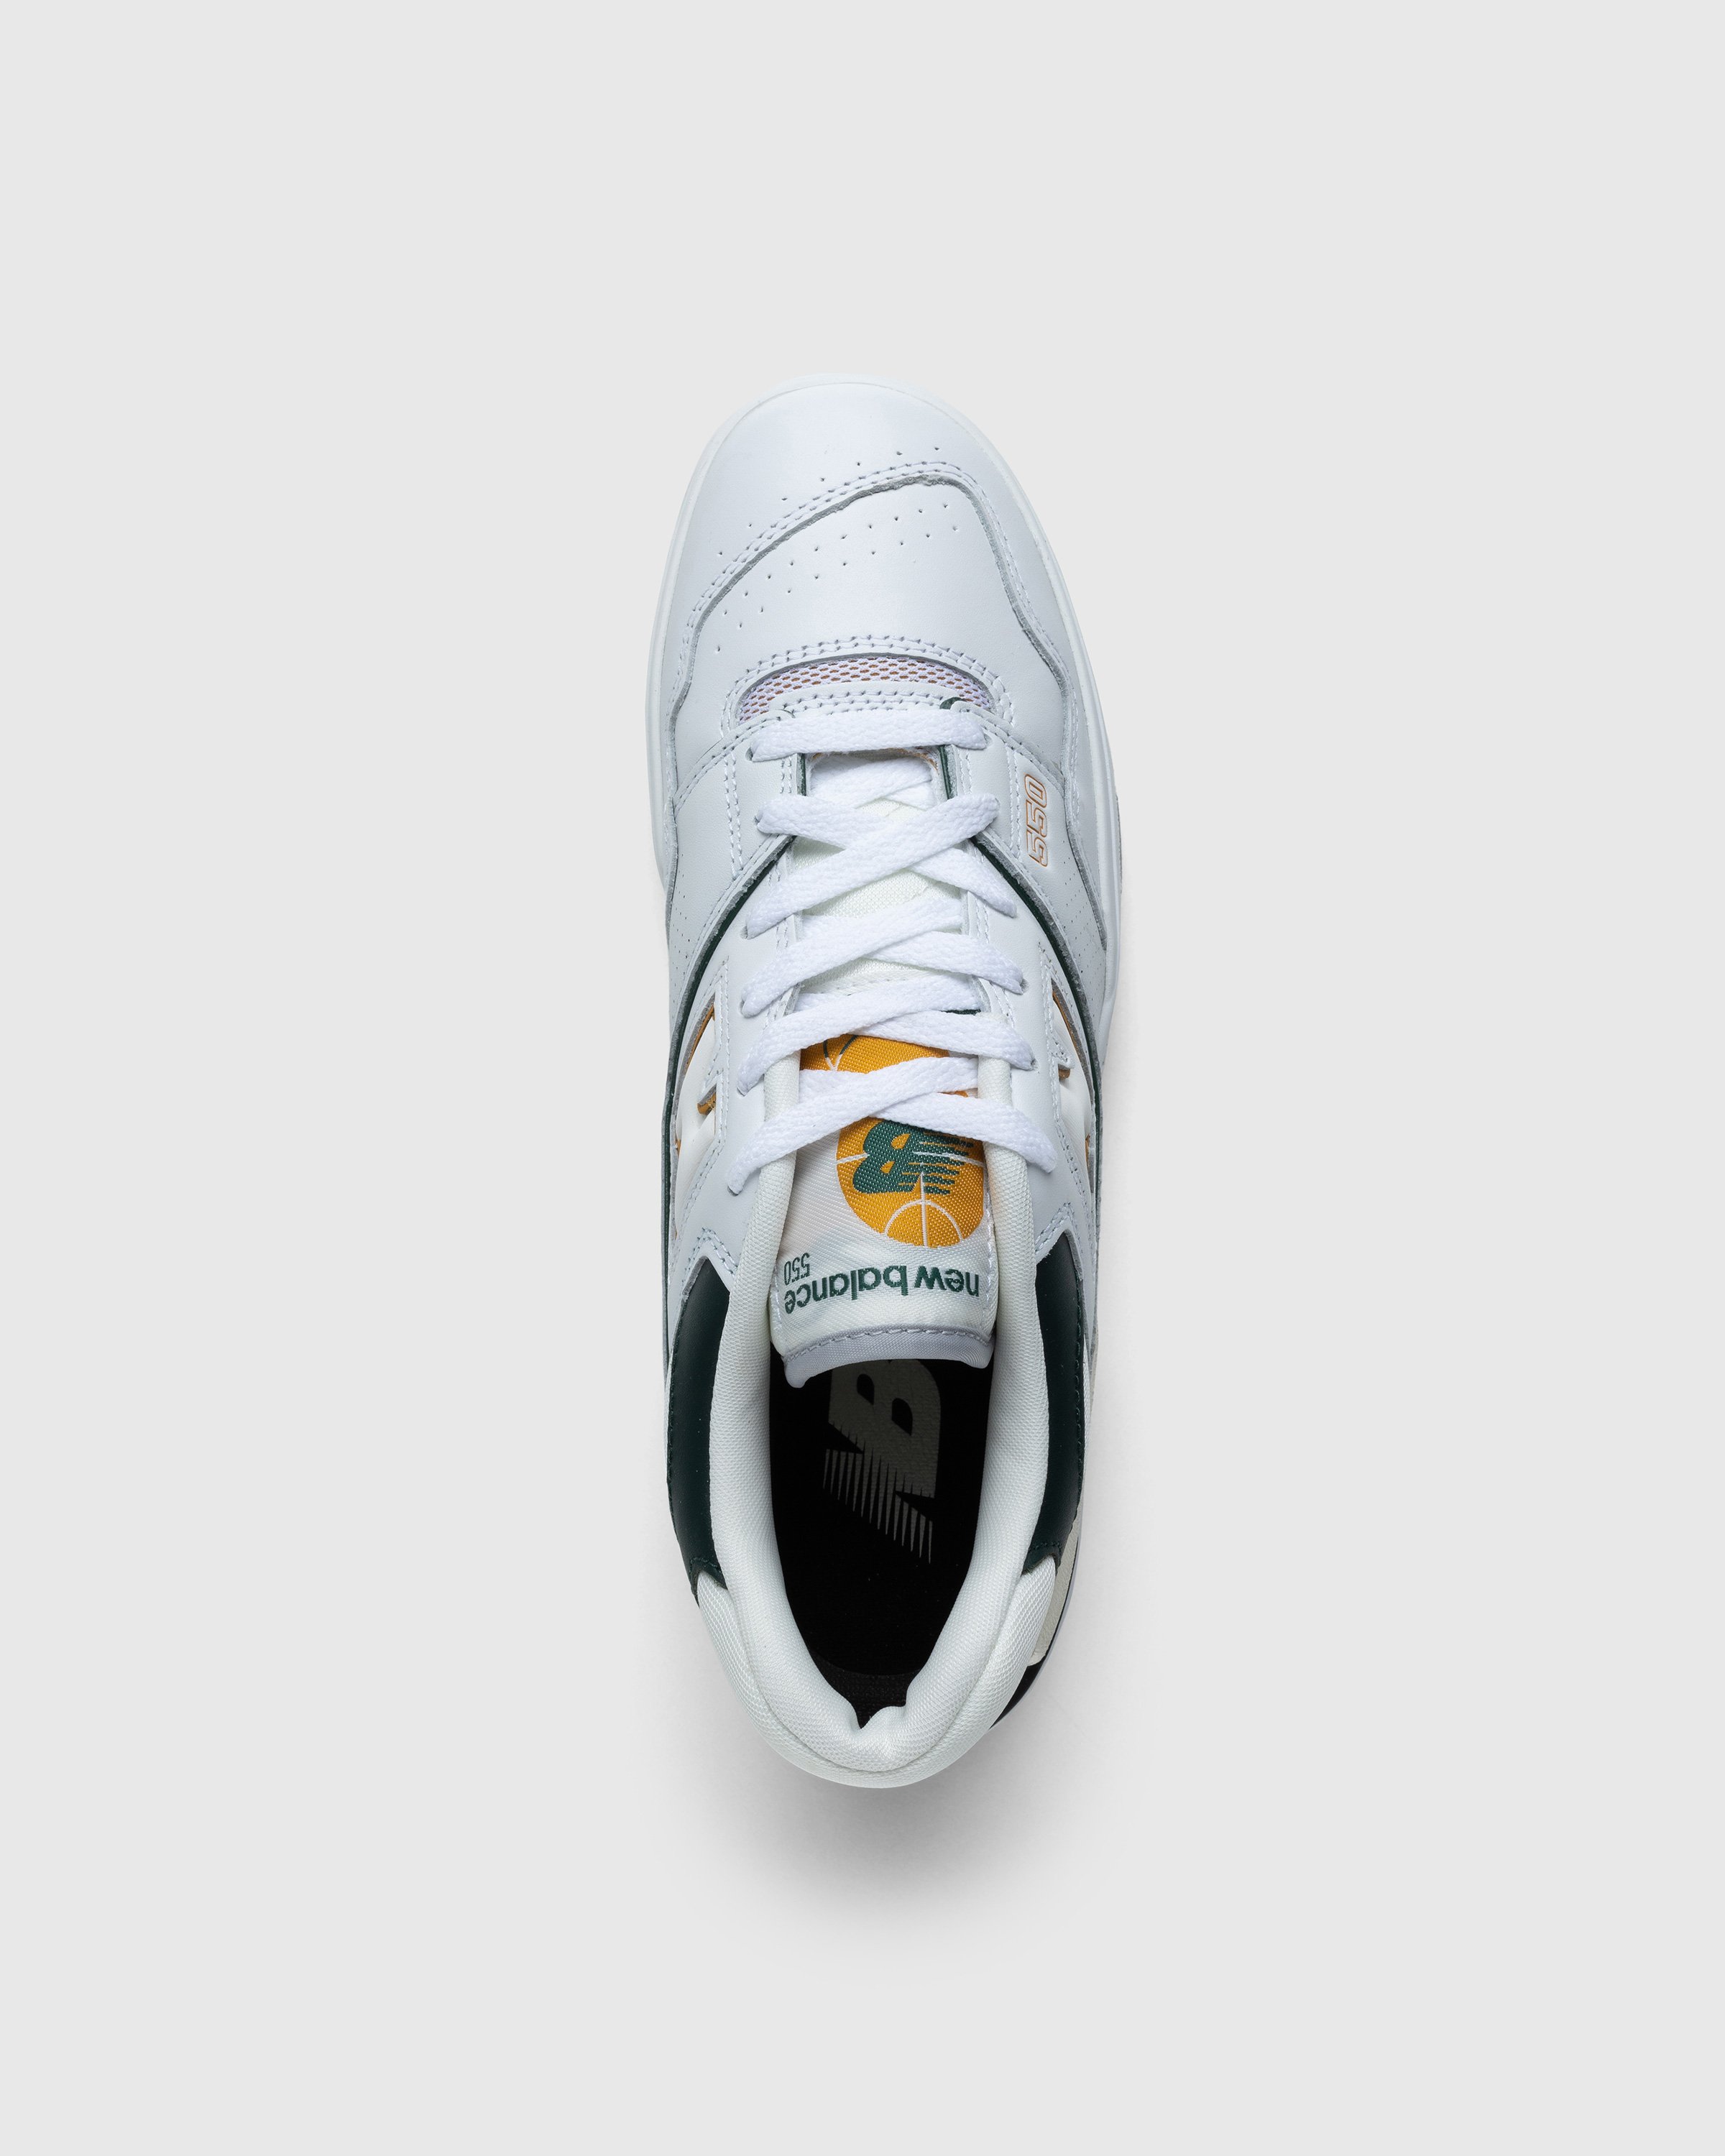 New Balance - BB550PWC White - Footwear - White - Image 5